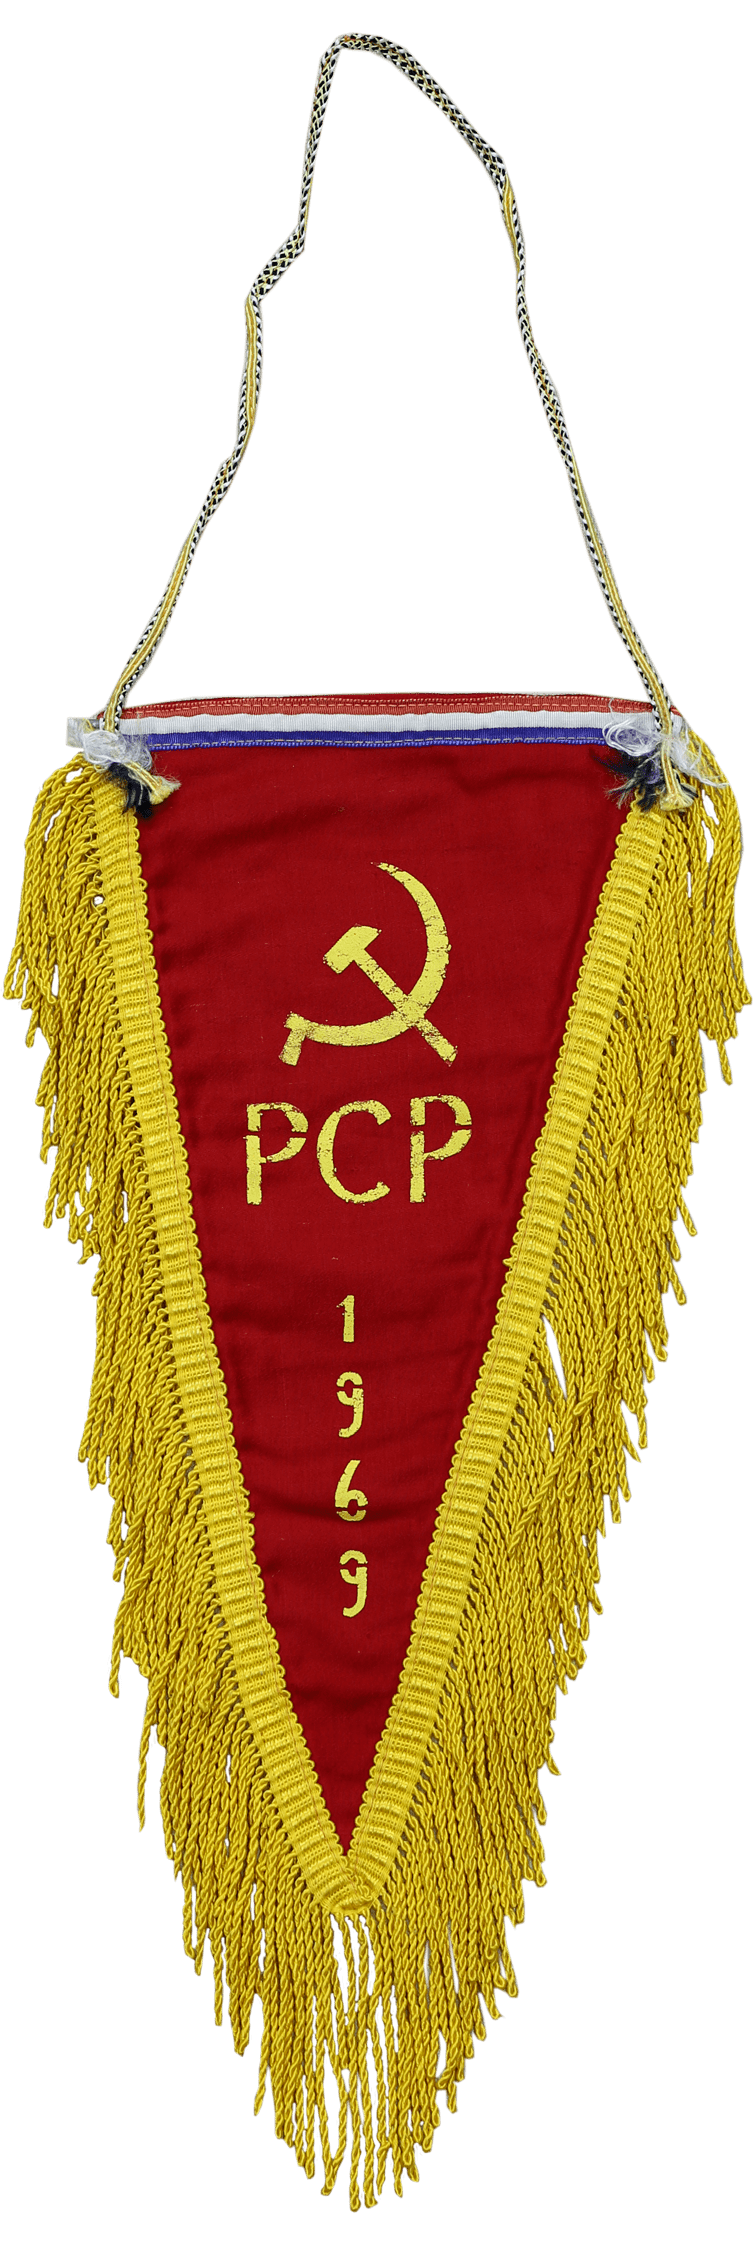 巴拉圭共产党的三角旗 Partido Comunista Paraguayo 斯大林格勒战役博物馆